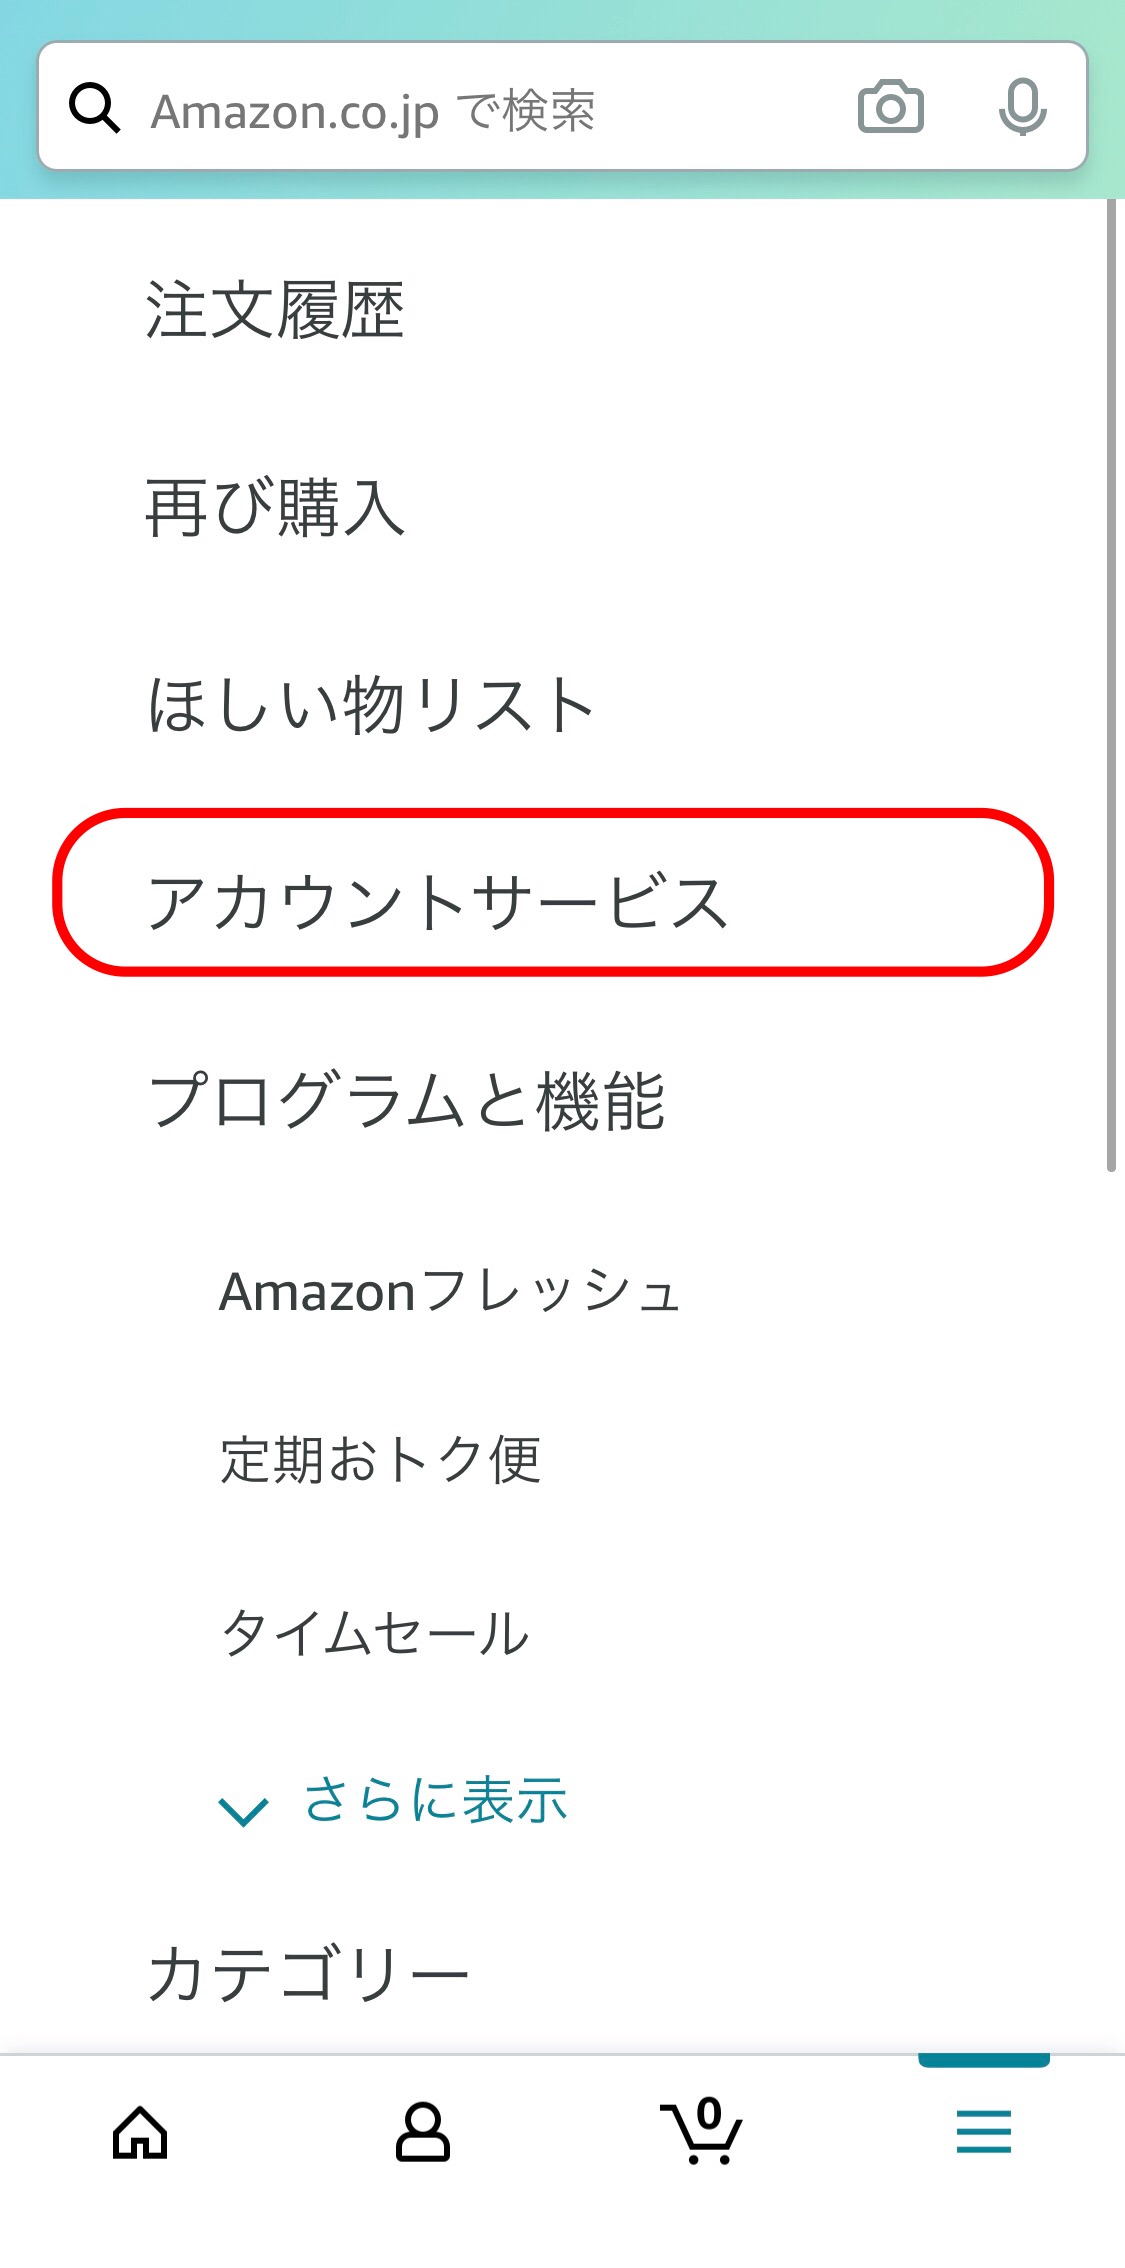 Amazon アカウントサービス